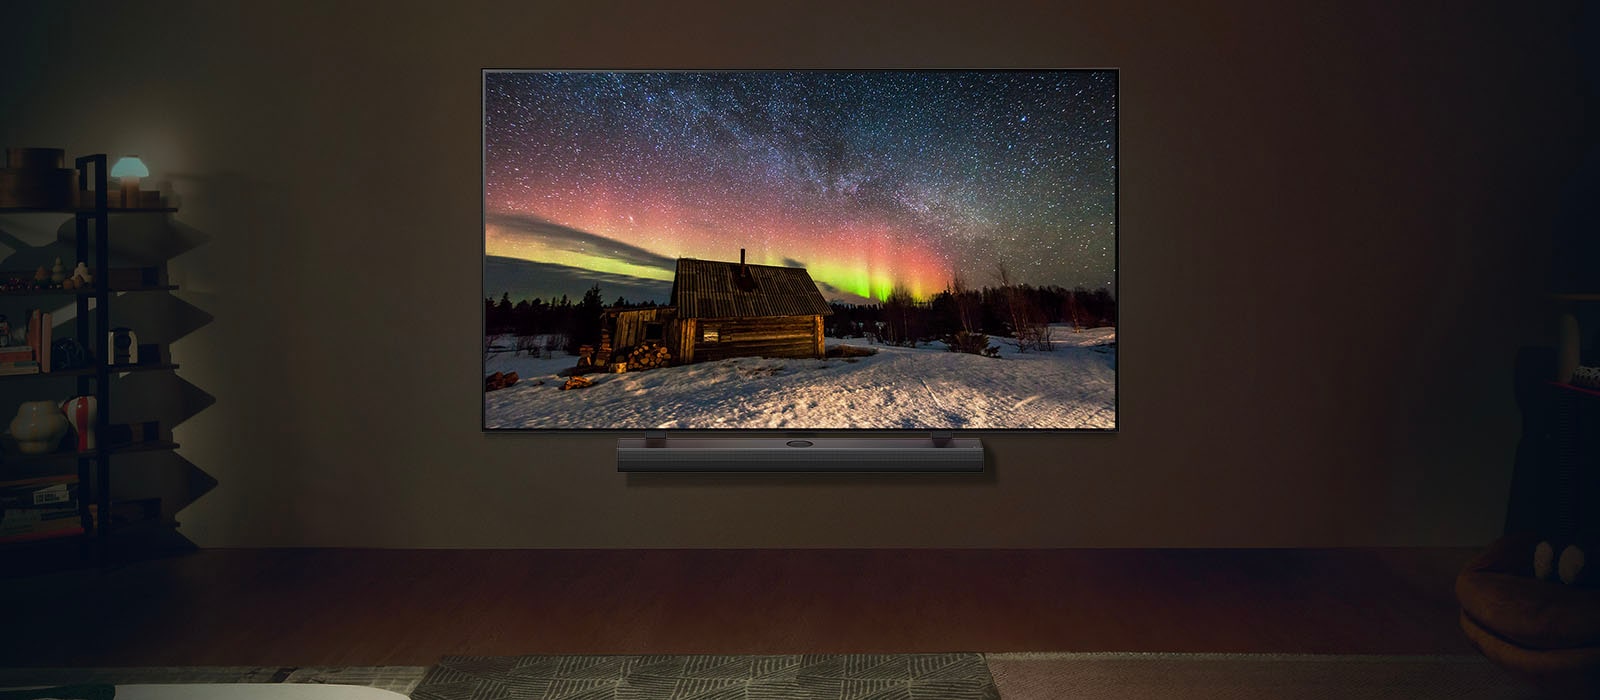 LG TV og LG Soundbar i et moderne oppholdsrom om natten. Et skjermbilde av nordlys vises med de ideelle lysstyrkenivåene.